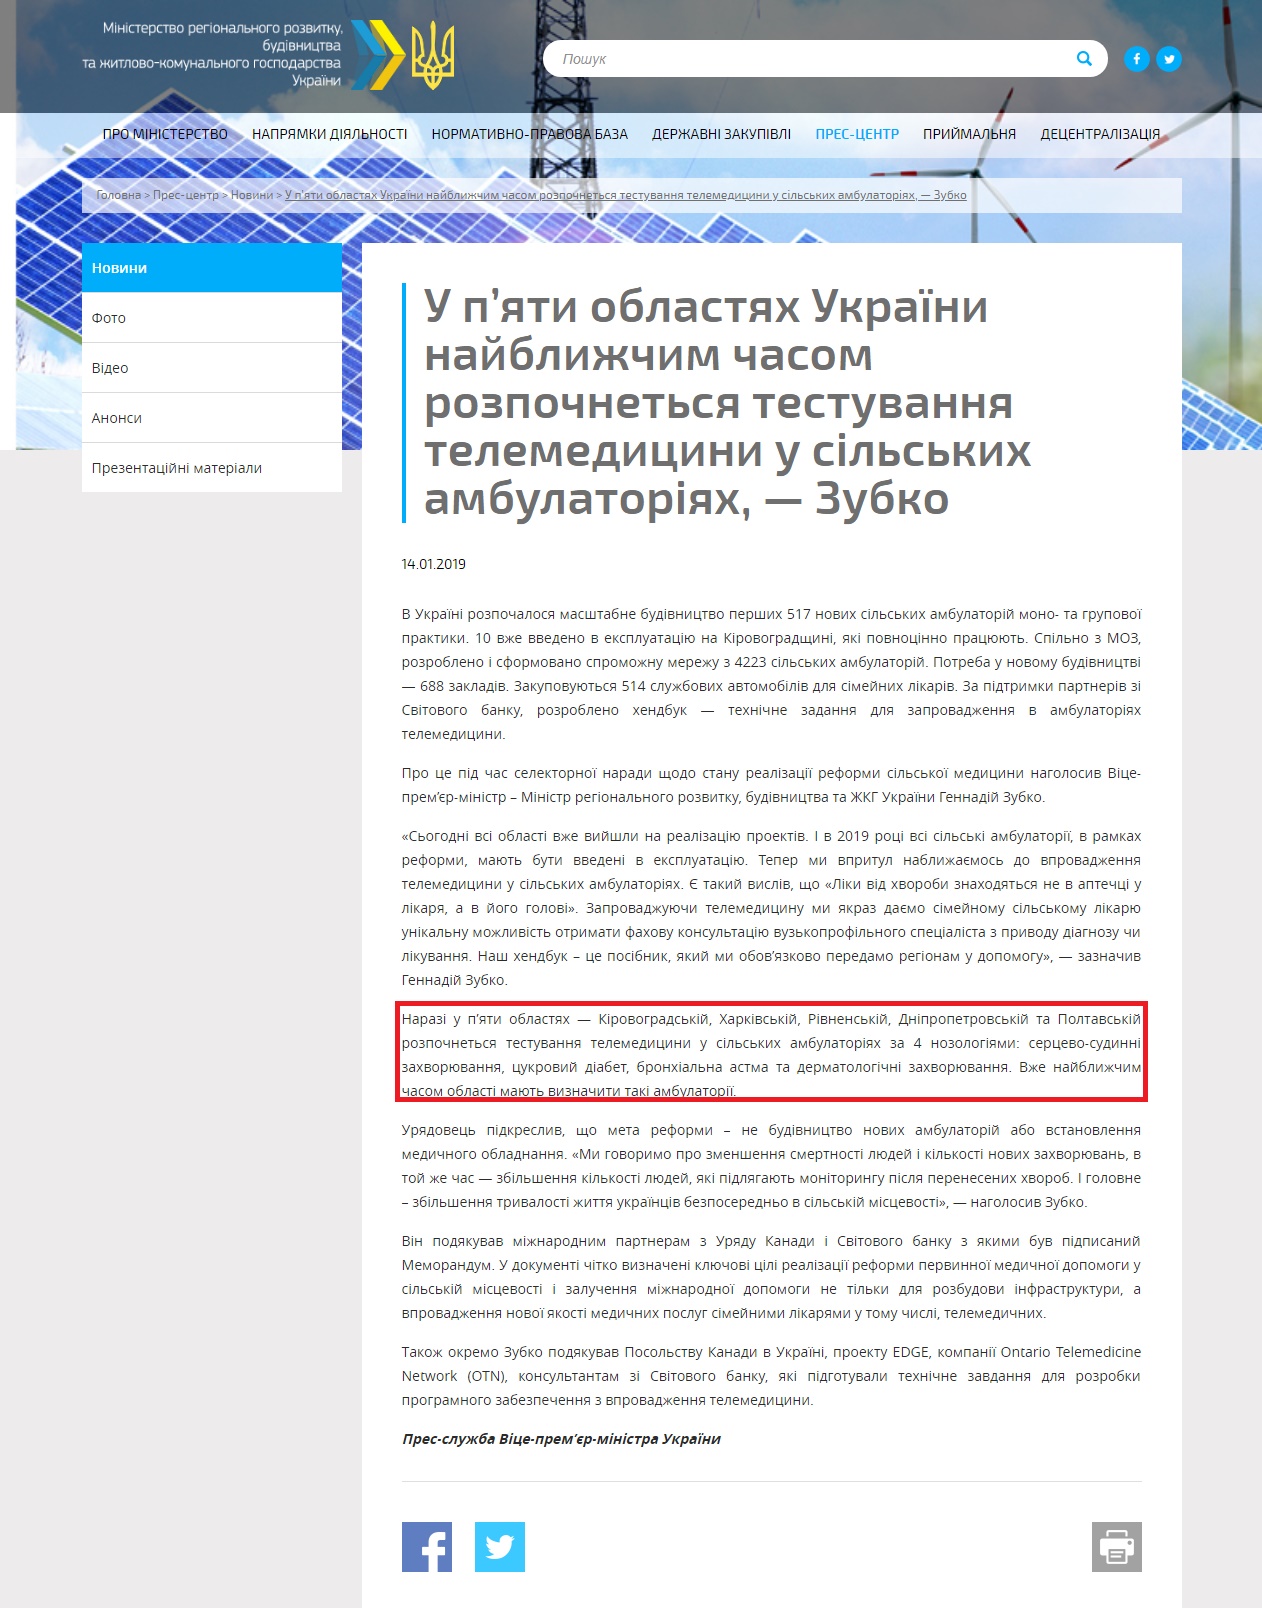 http://www.minregion.gov.ua/press/news/u-p-yati-oblastyah-ukrayini-nayblizhchim-chasom-rozpochnetsya-testuvannya-telemeditsini-u-silskih-ambulatoriyah-zubko/